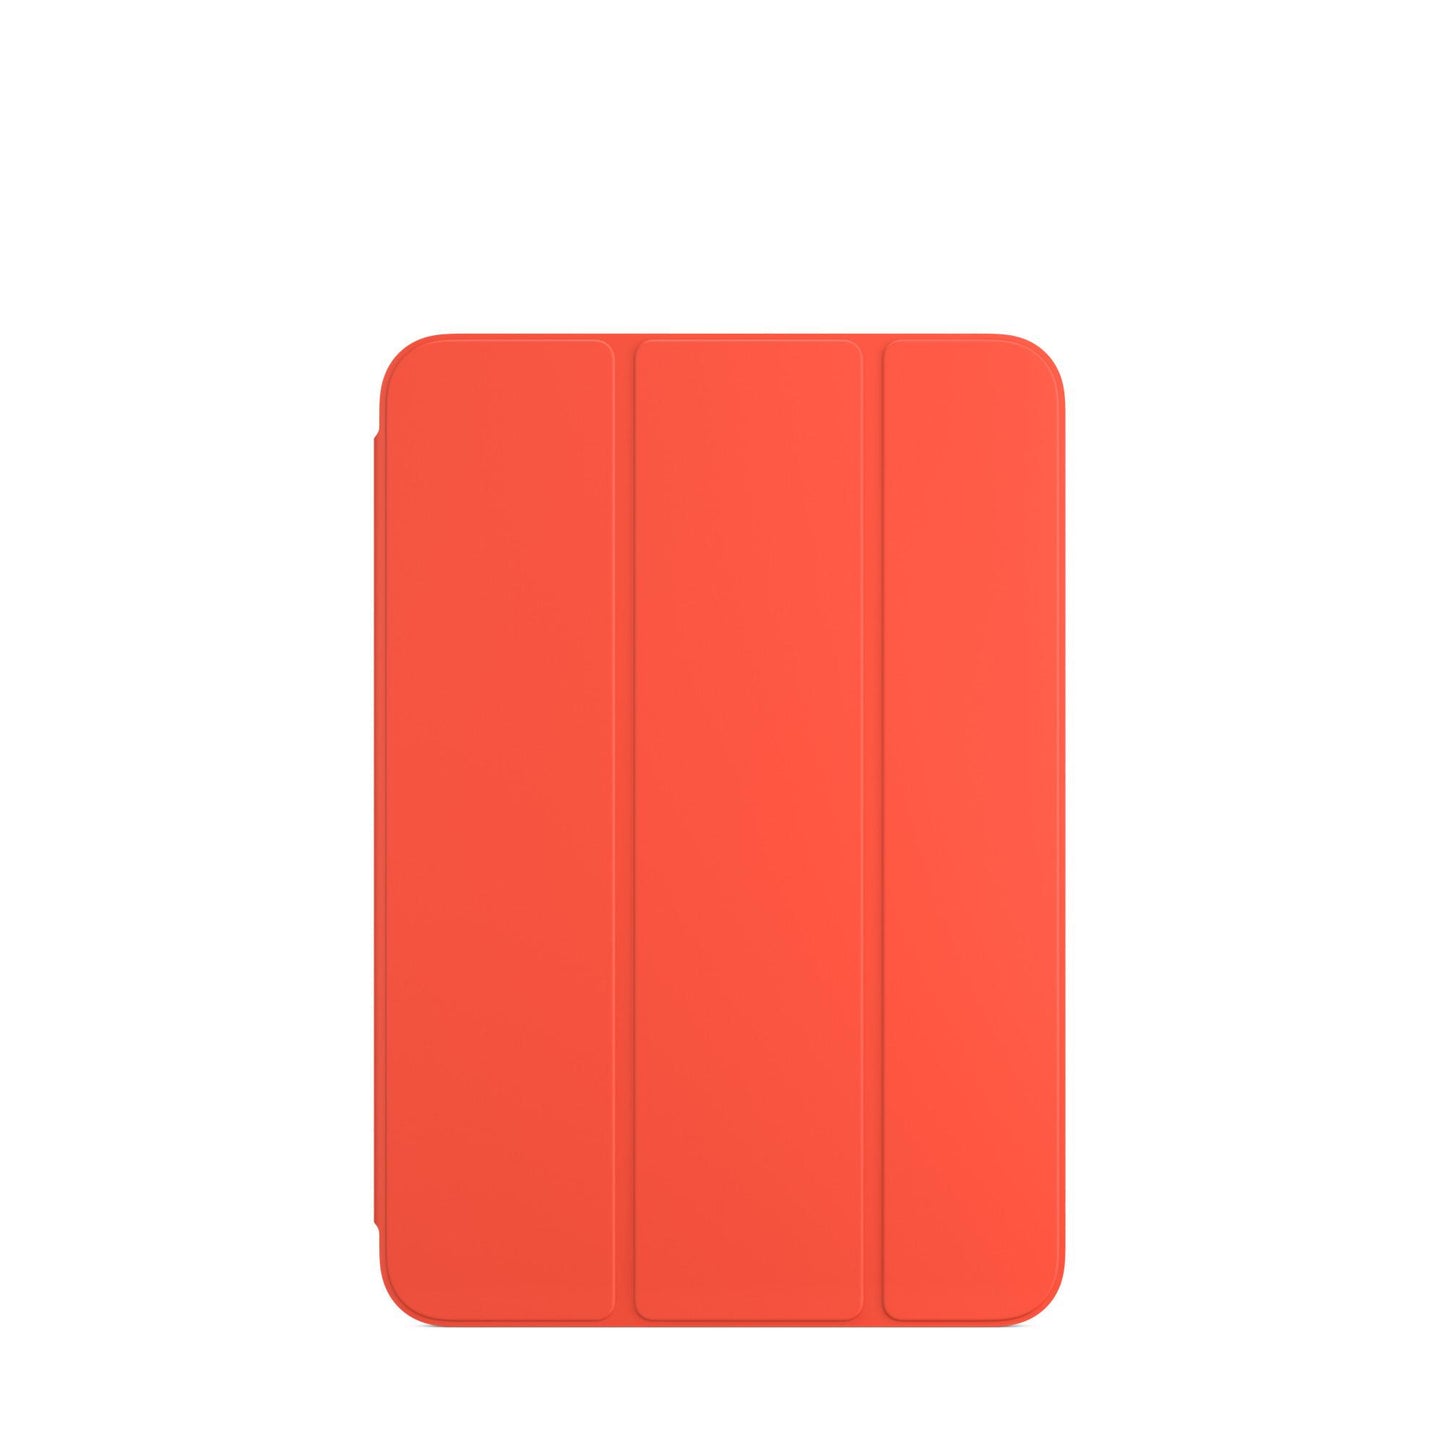 المحفظة الذكي‏ة iPad mini — اليكتريك اورانج